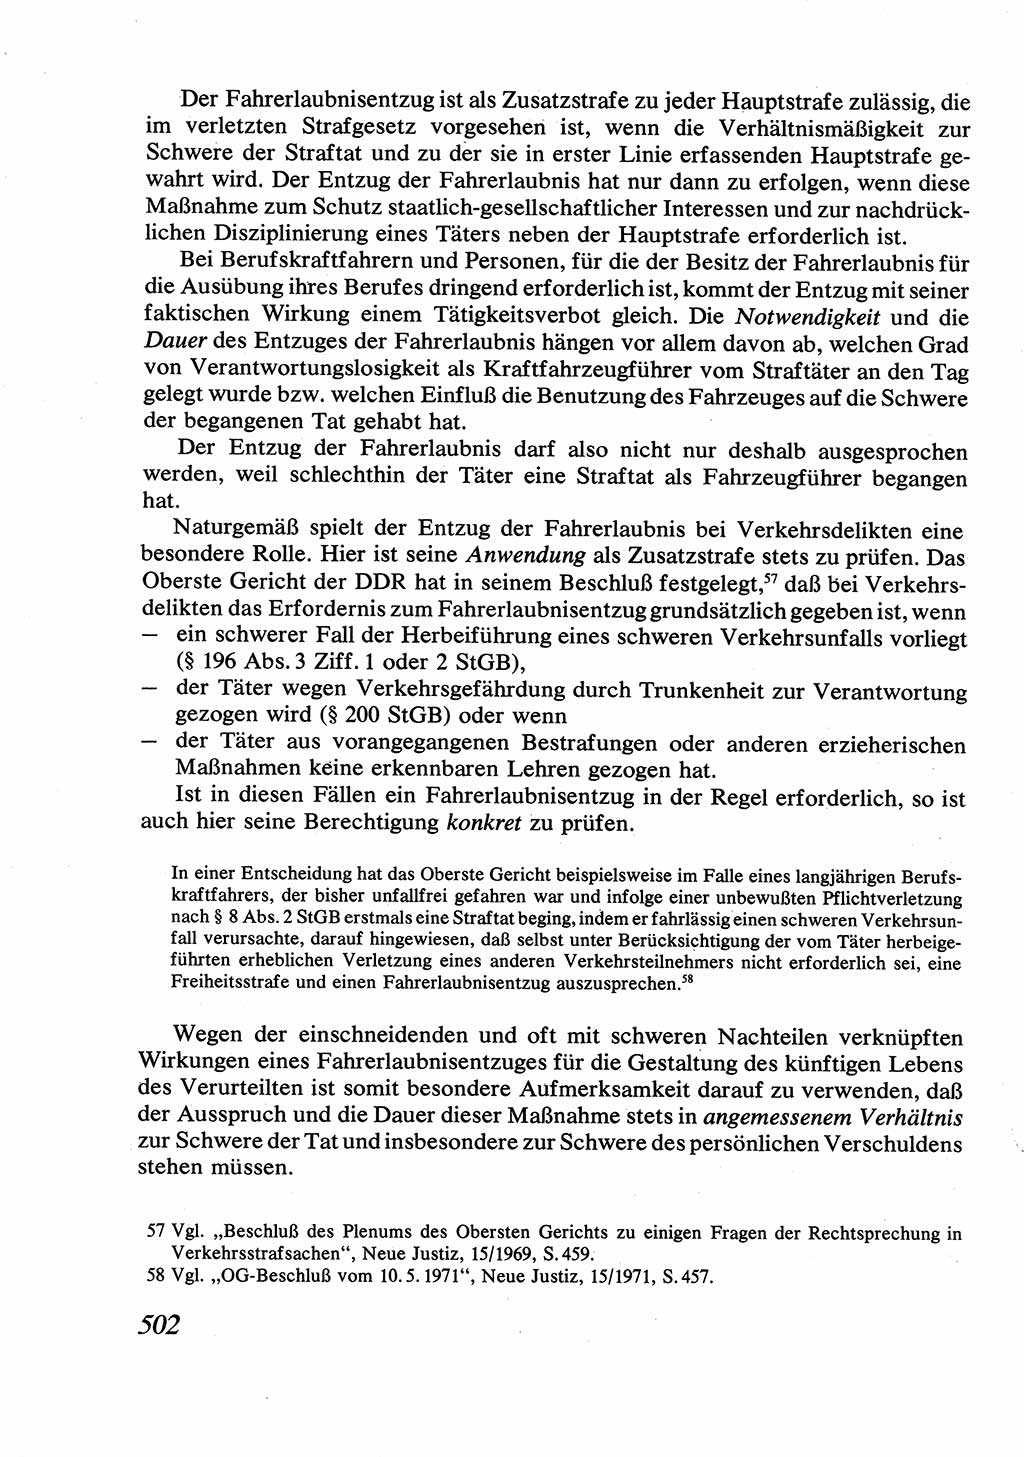 Strafrecht [Deutsche Demokratische Republik (DDR)], Allgemeiner Teil, Lehrbuch 1976, Seite 502 (Strafr. DDR AT Lb. 1976, S. 502)